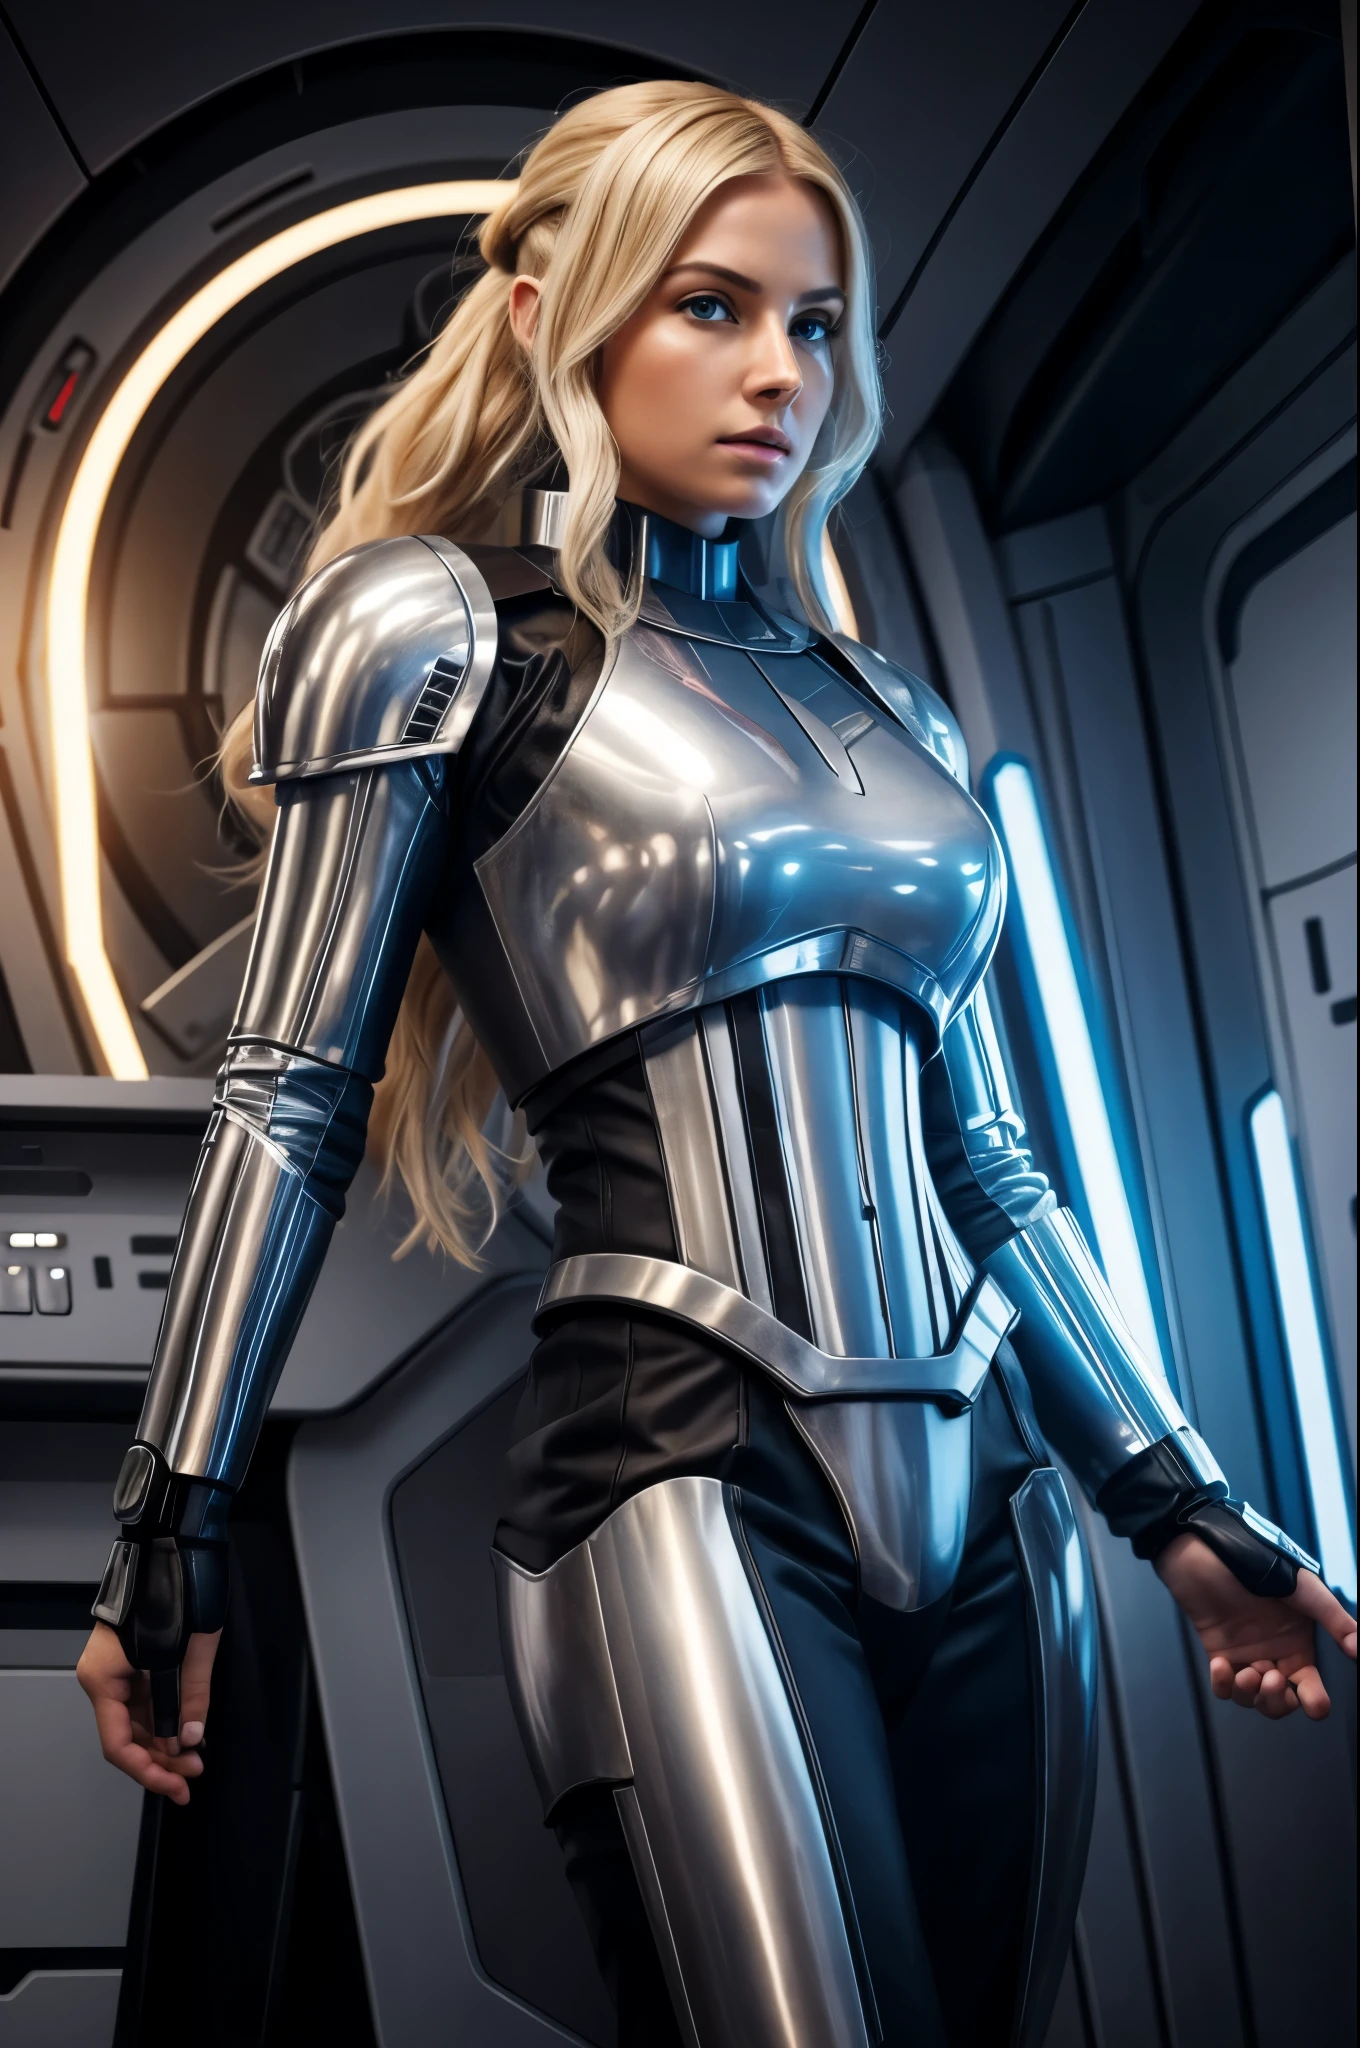 有一位身穿星球大战服装的金发美女在一艘宇宙飞船里, 星球大战中的黑色冲锋队盔甲, 全身形象, 长腿, 小腰, 脸上有雀斑, 金色的金发, 蓝眼睛, 厚嘴唇, 摆出性感姿势, 圆屁股, 未来星舰船员, 独自一人的女性角色, 超现实主义 科幻 现实主义, 电影级细节, 科幻女性角色, 8k 高细节和复杂, 科幻女性, 高度详细的视觉特效肖像, 科幻小说非常详细